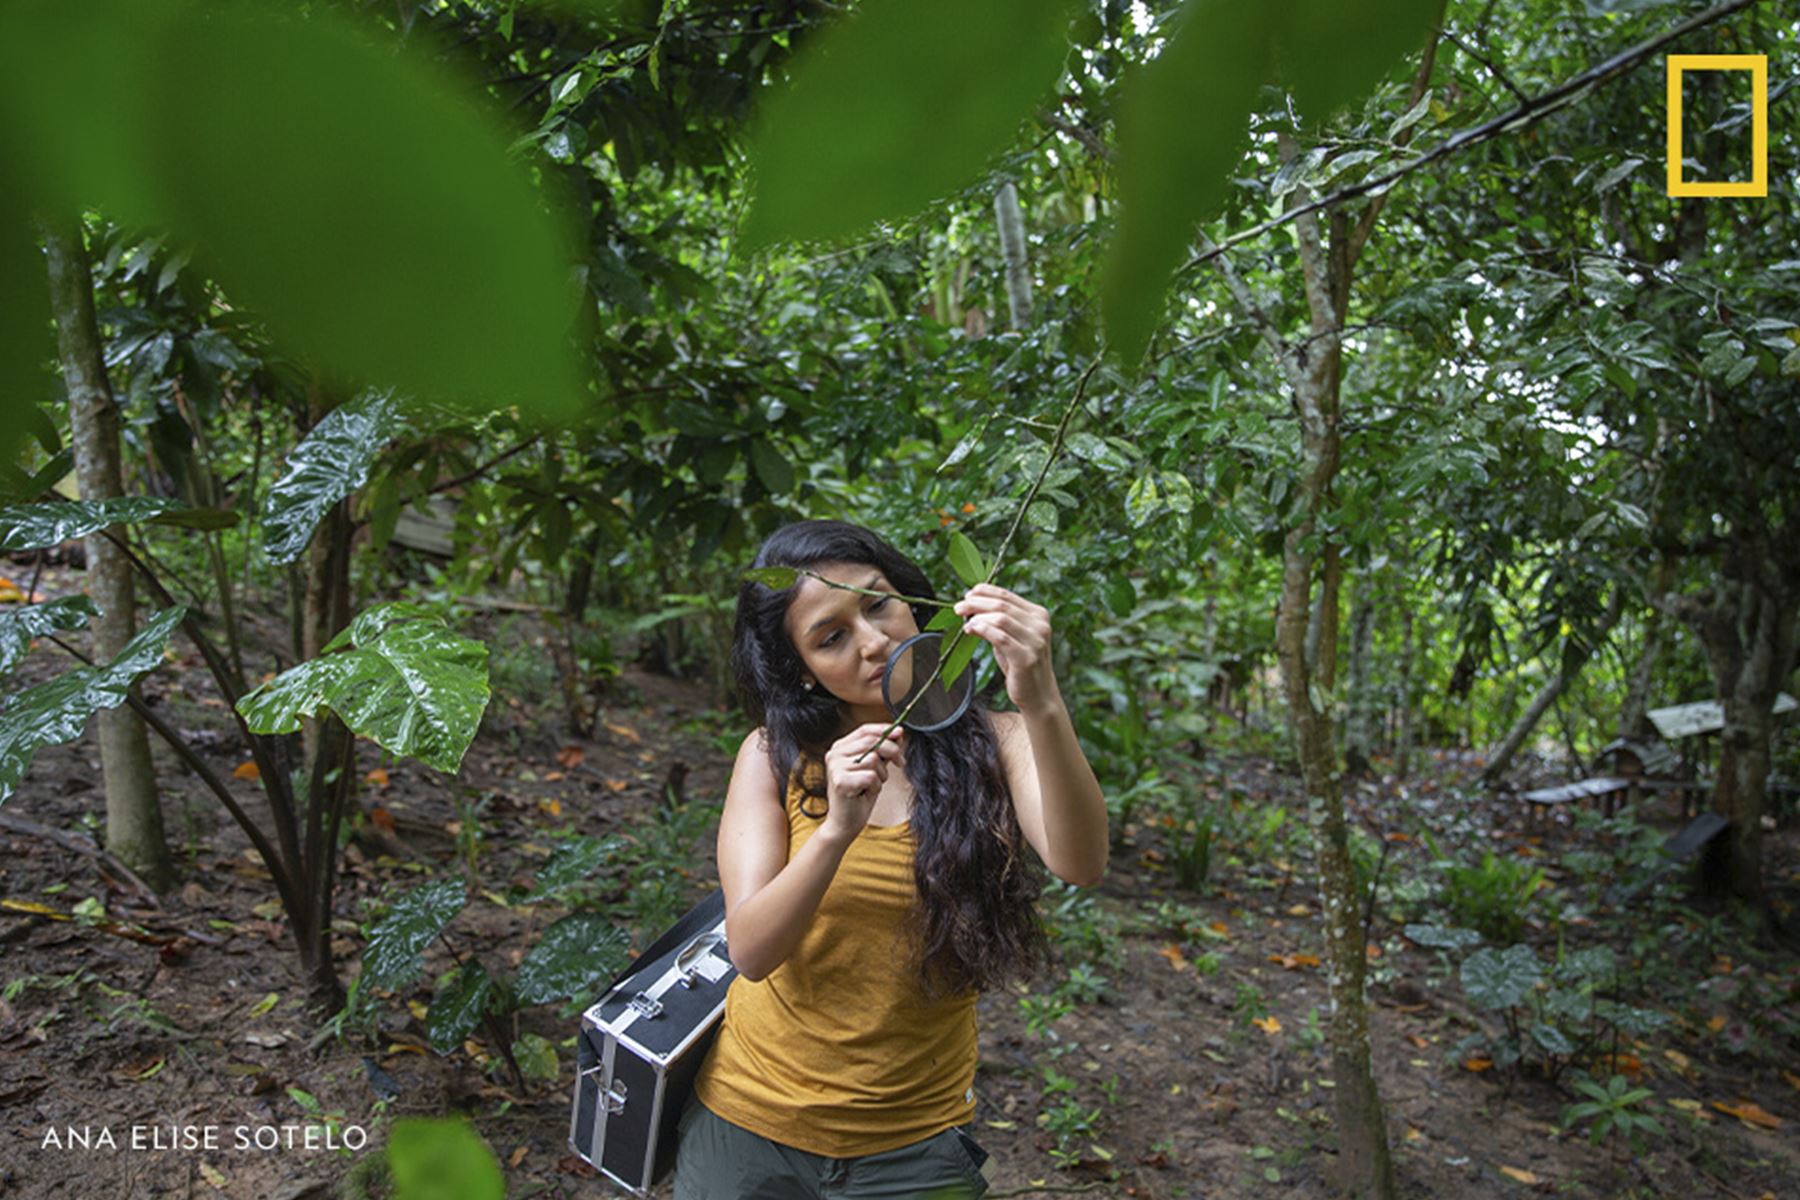 La científica peruana Rosa Vásquez Espinoza, exploradora del National Geographic, señala los biólogos pueden contribuir con propuestas para reemplazar materiales y prácticas menos sostenibles. Foto: Ana Sotelo/National Geographic